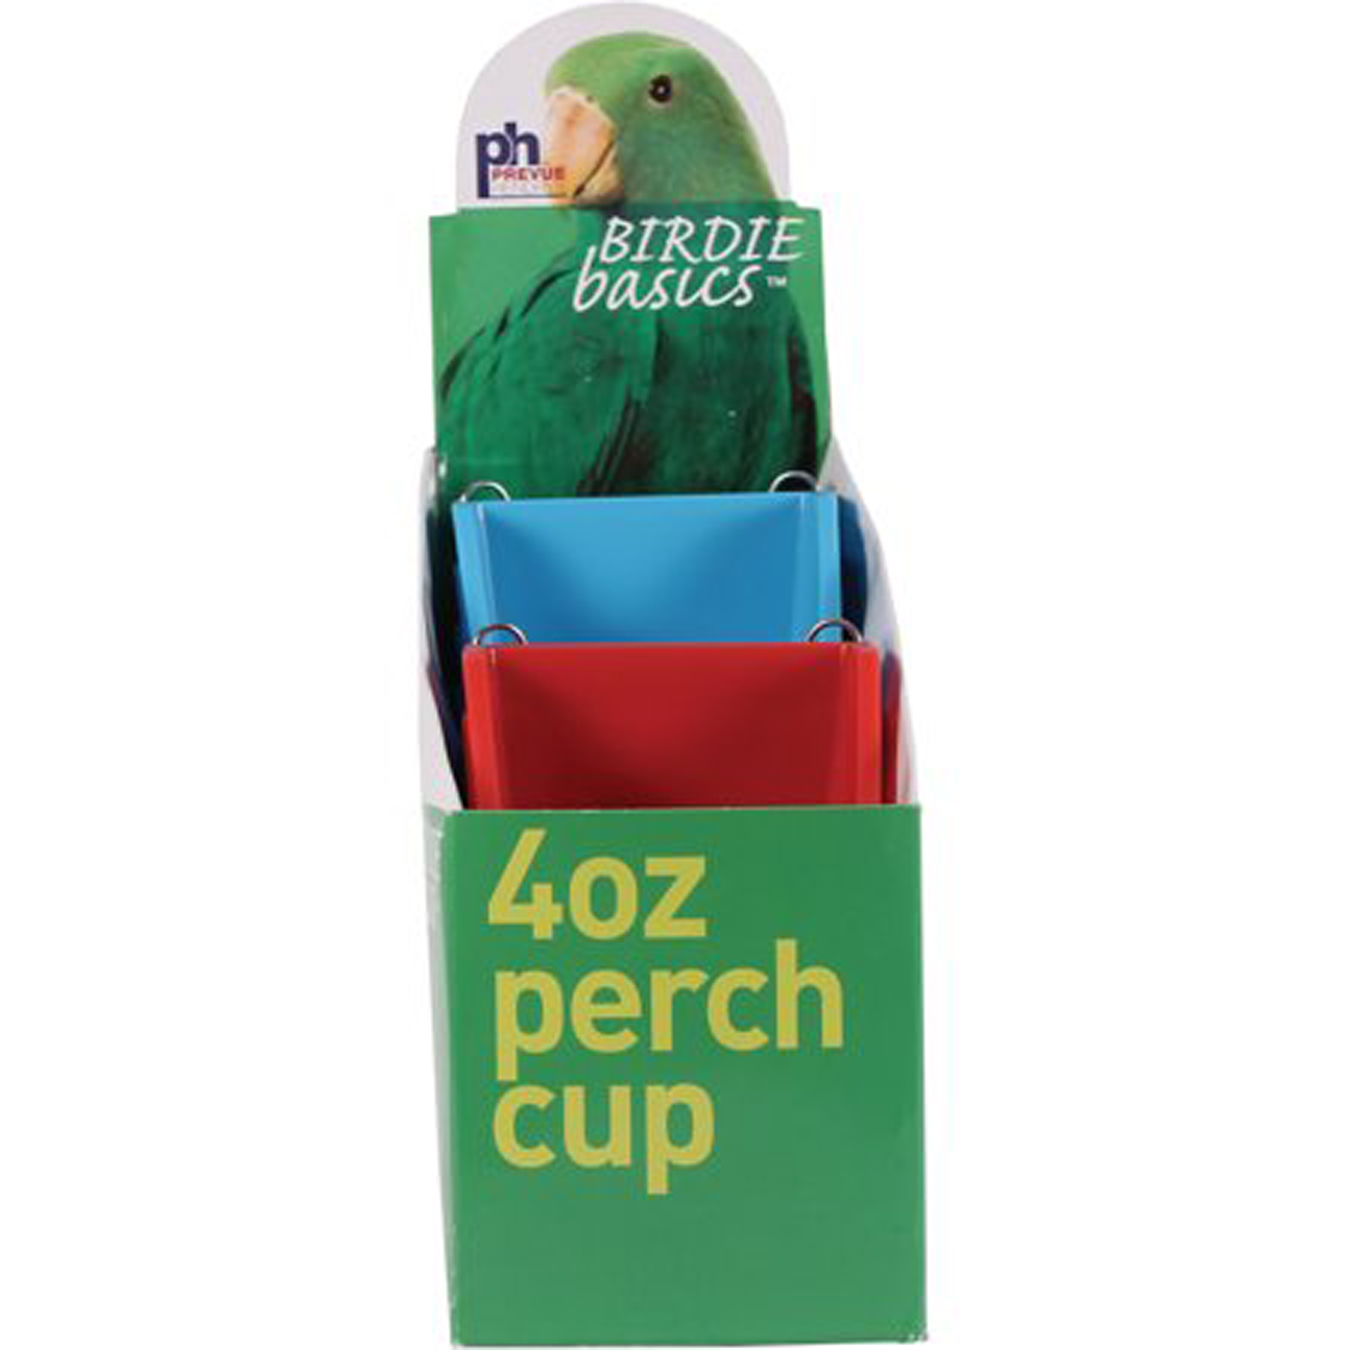 Prevue Birdie Basics 4oz. Perch Cups 12 count carton